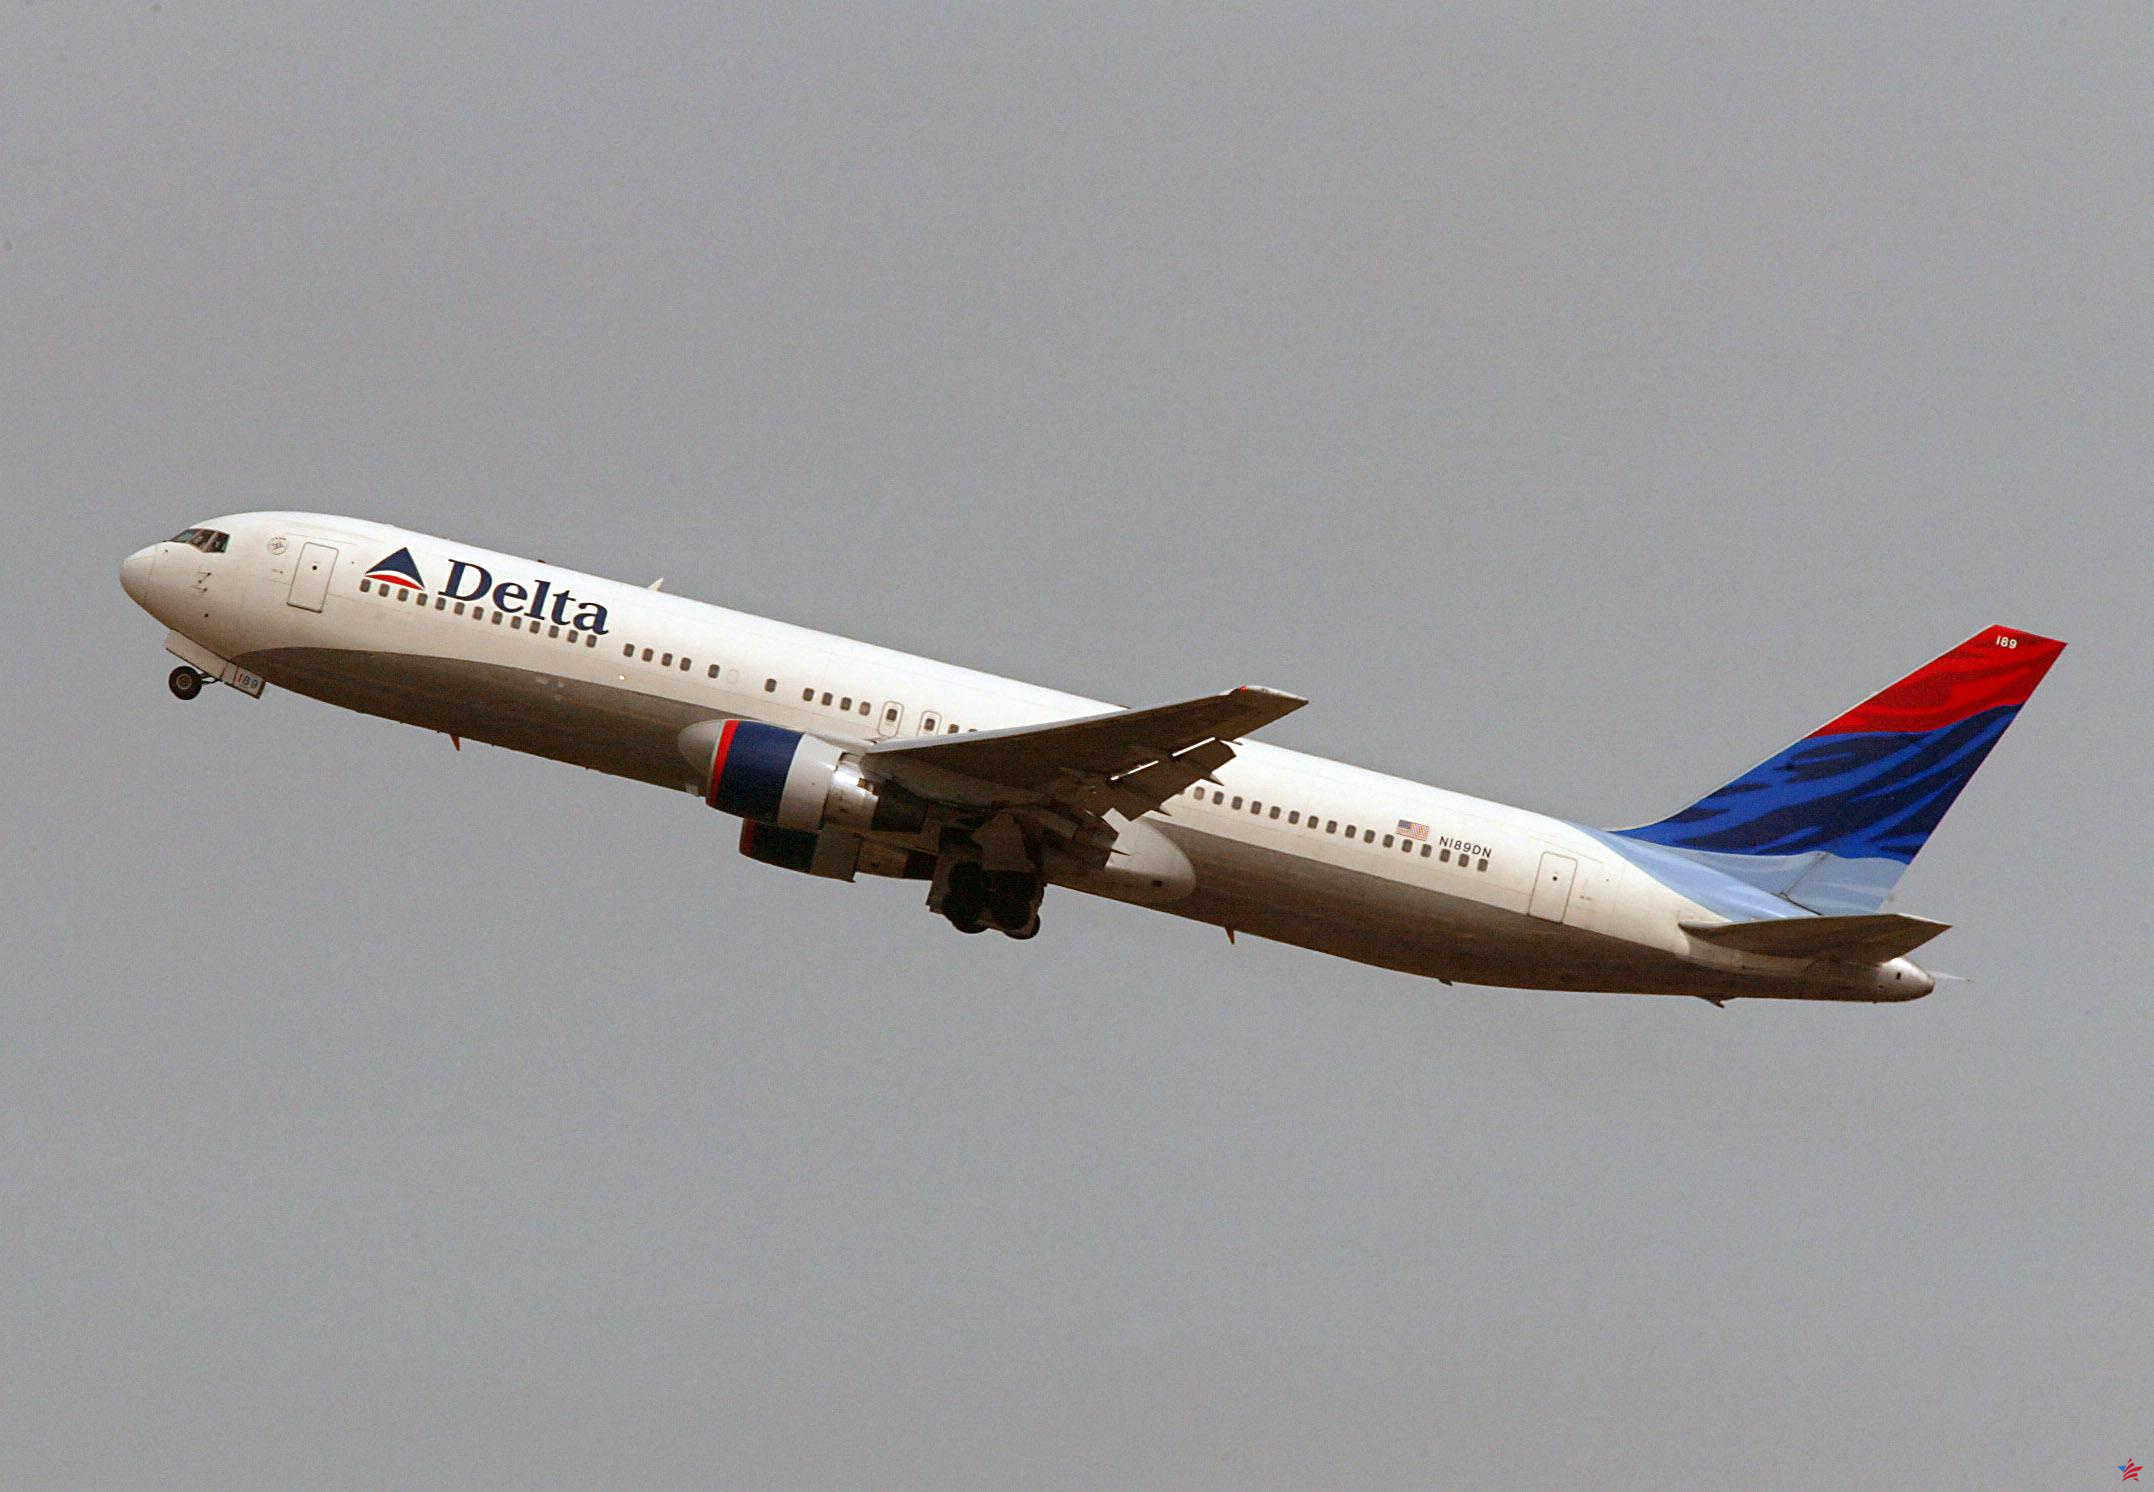 Estados Unidos: Pasajera de vuelo de Delta amenazada con ser excluida por no llevar sujetador